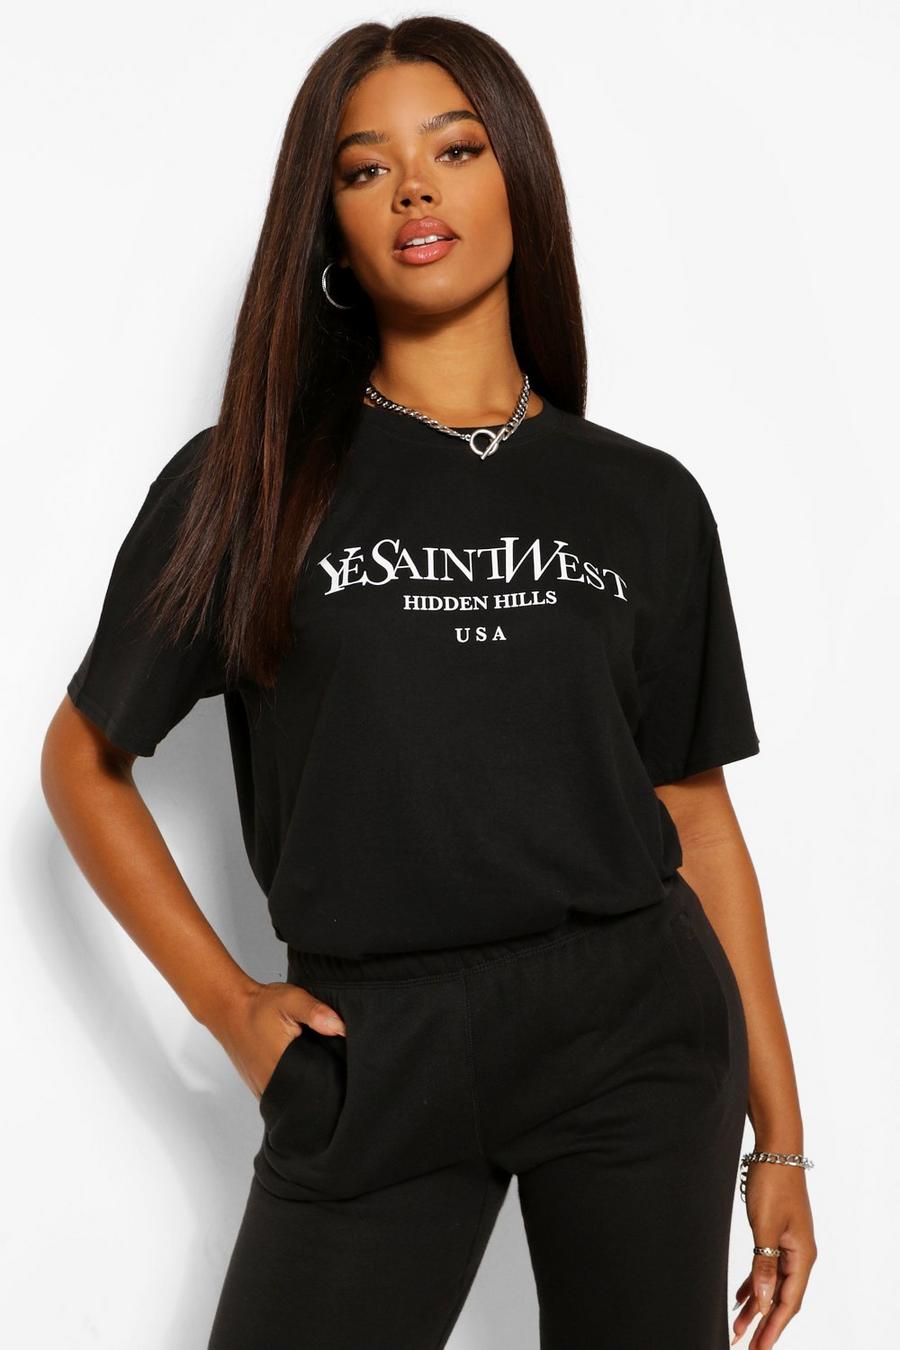 Black Ye Saint West Oversized T-Shirt